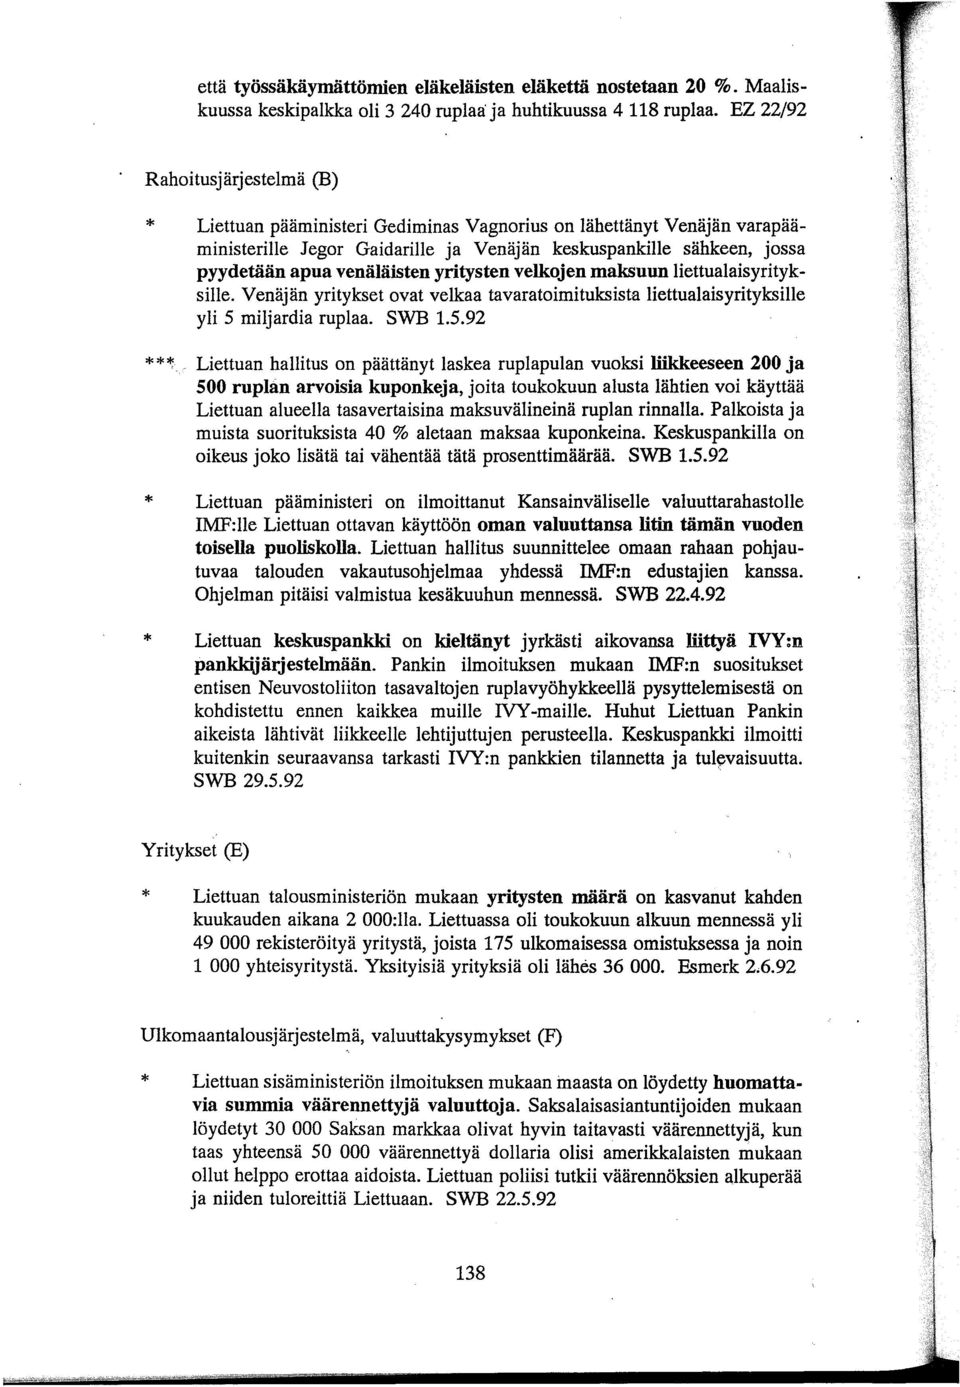 venäläisten yritysten velkojen maksuun liettualaisyrityksille. Venäjän yritykset ovat velkaa tavaratoimituksista liettualaisyrityksille yli 5 